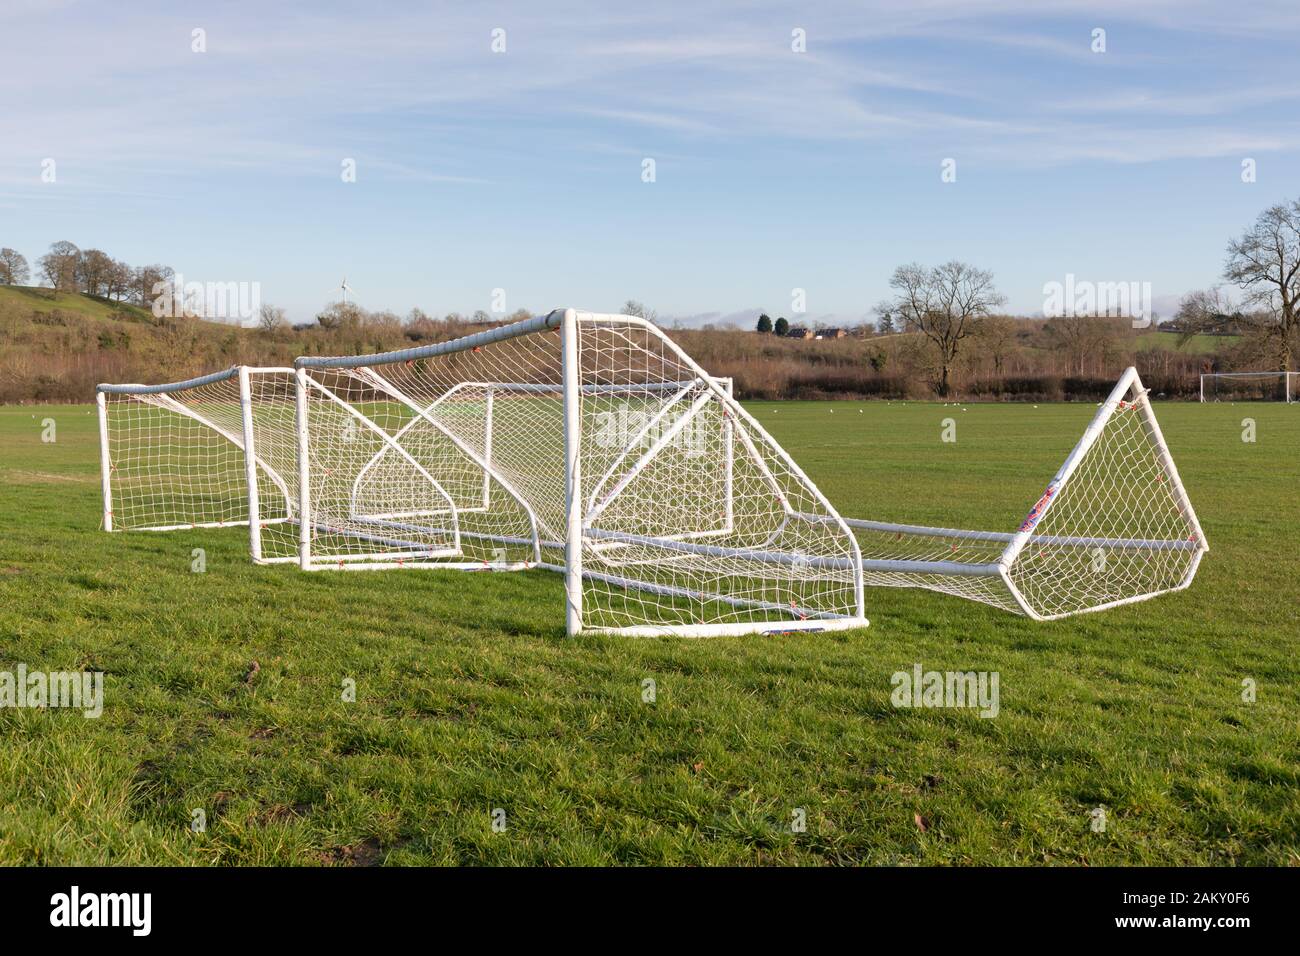 Crick, Northamptonshire, Reino Unido: Cuatro goles de fútbol de cinco a un lado enmarcados en blanco que se ponen en la hierba de un campo de juego en una zona rural. Foto de stock